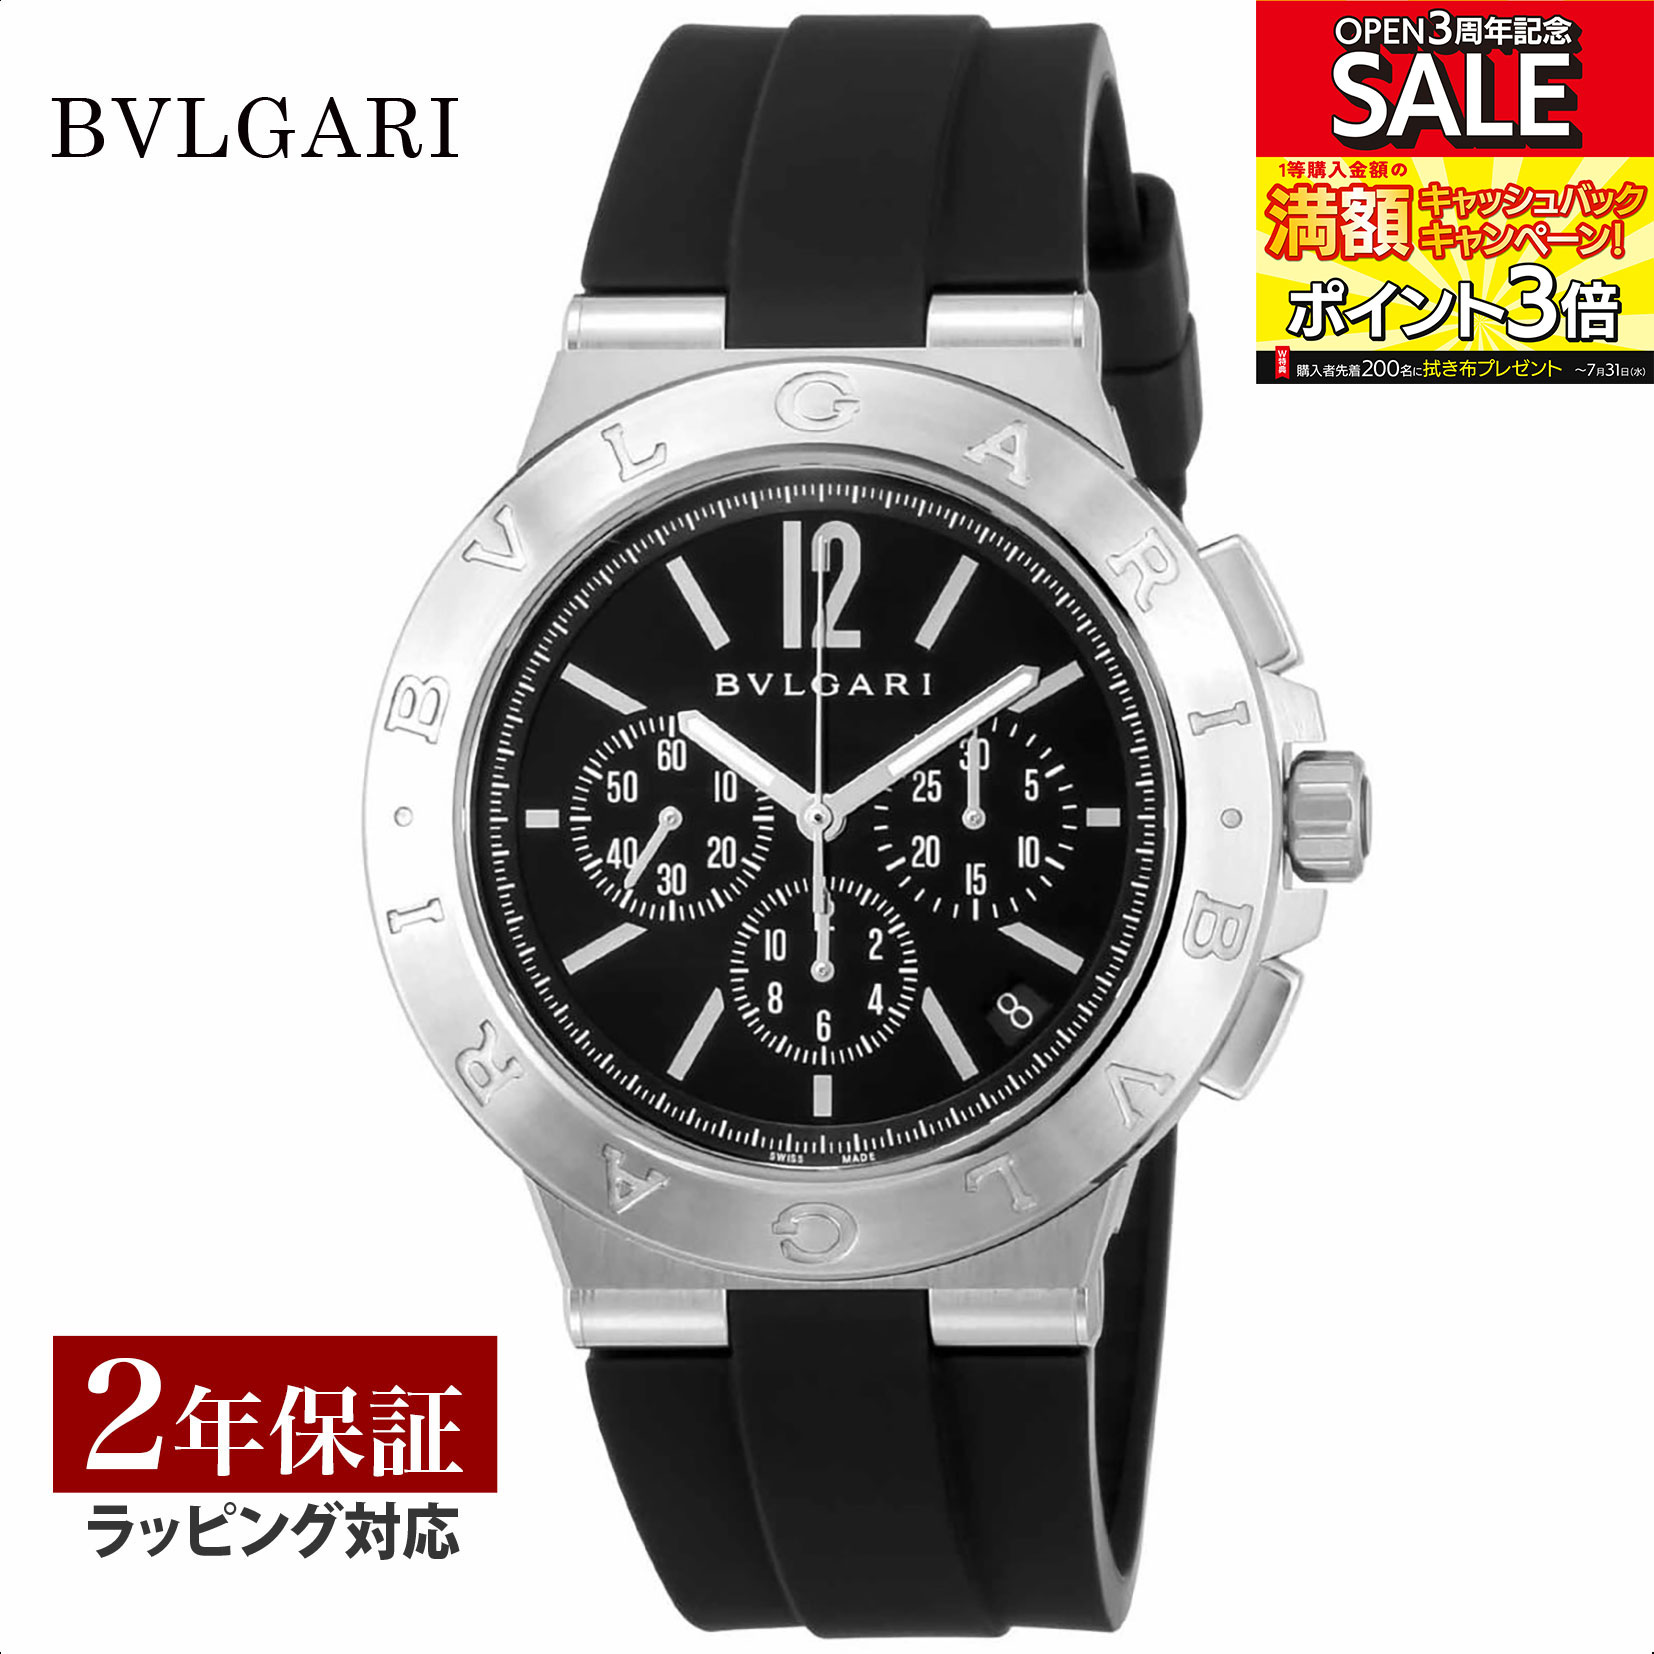 【レビューでブルガリランチ券】ブルガリ BVLGARI メンズ 時計 Diagono ディアゴノ 自動巻 ブラック DG41BSVDCH-SET-BLK 時計 腕時計 高級腕時計 ブランド 【ローン金利無料】